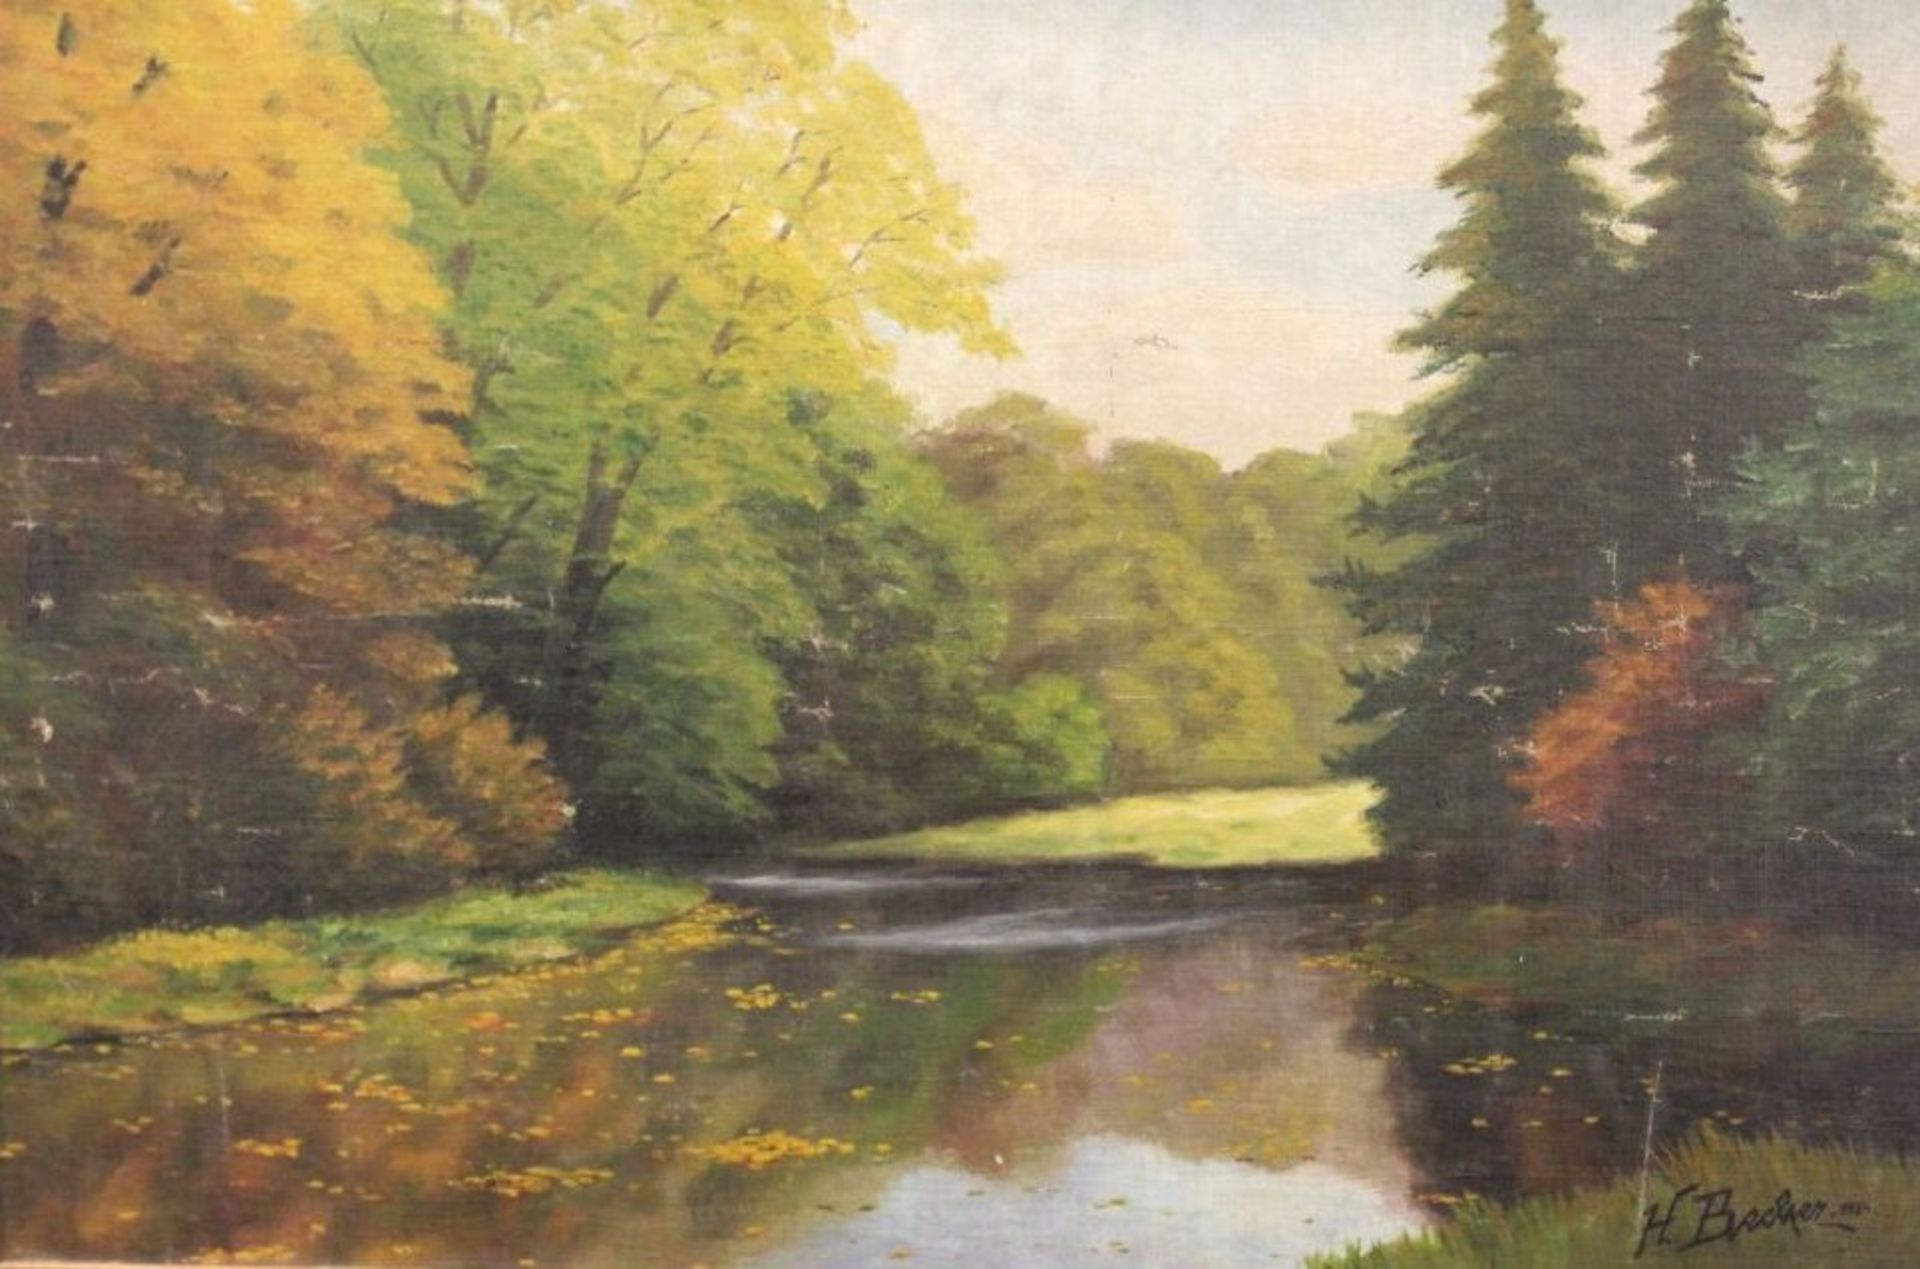 H.Becher 1934 "Landschaft", Öl/Hartfaser, gerahmt, RG 57 x 81cm, restaurierungsbedürftig,